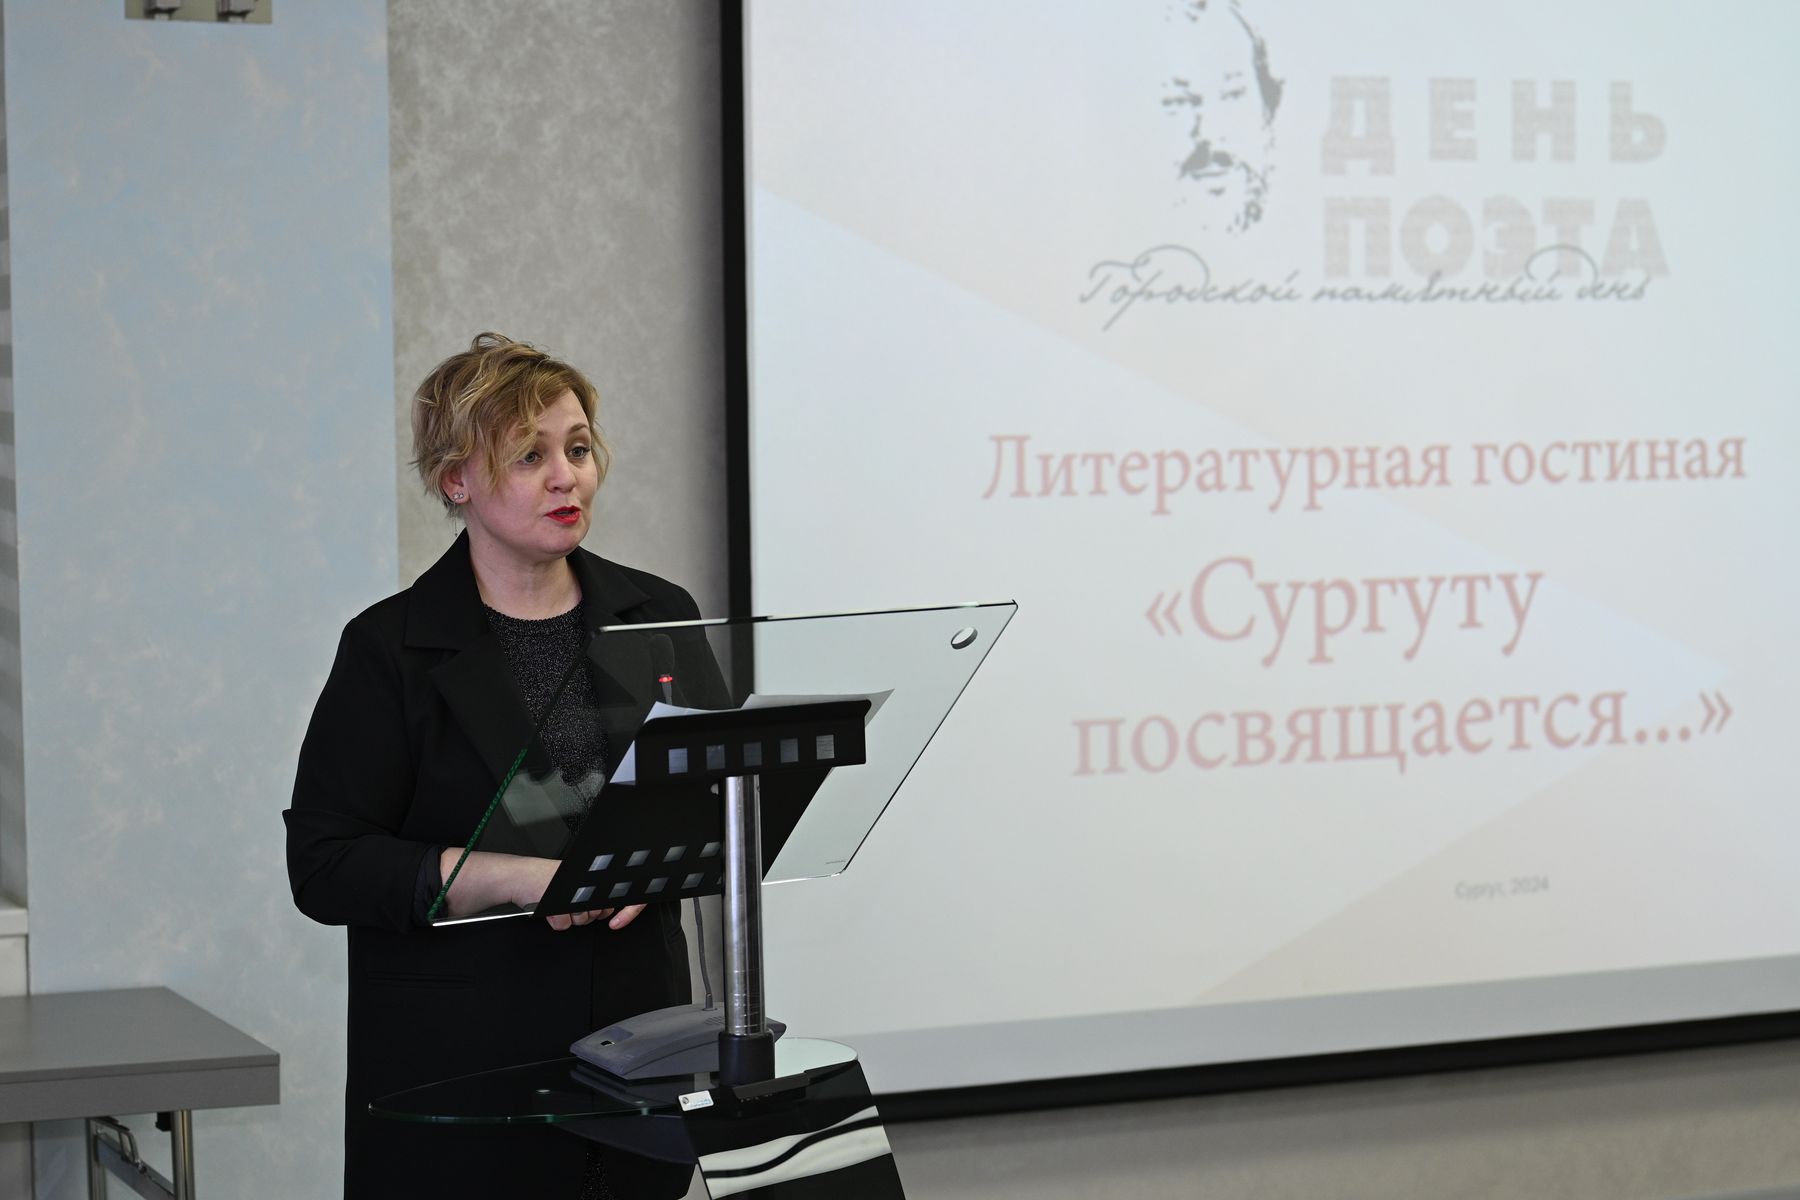 Александра Веревкина, ведущая литературной гостиной